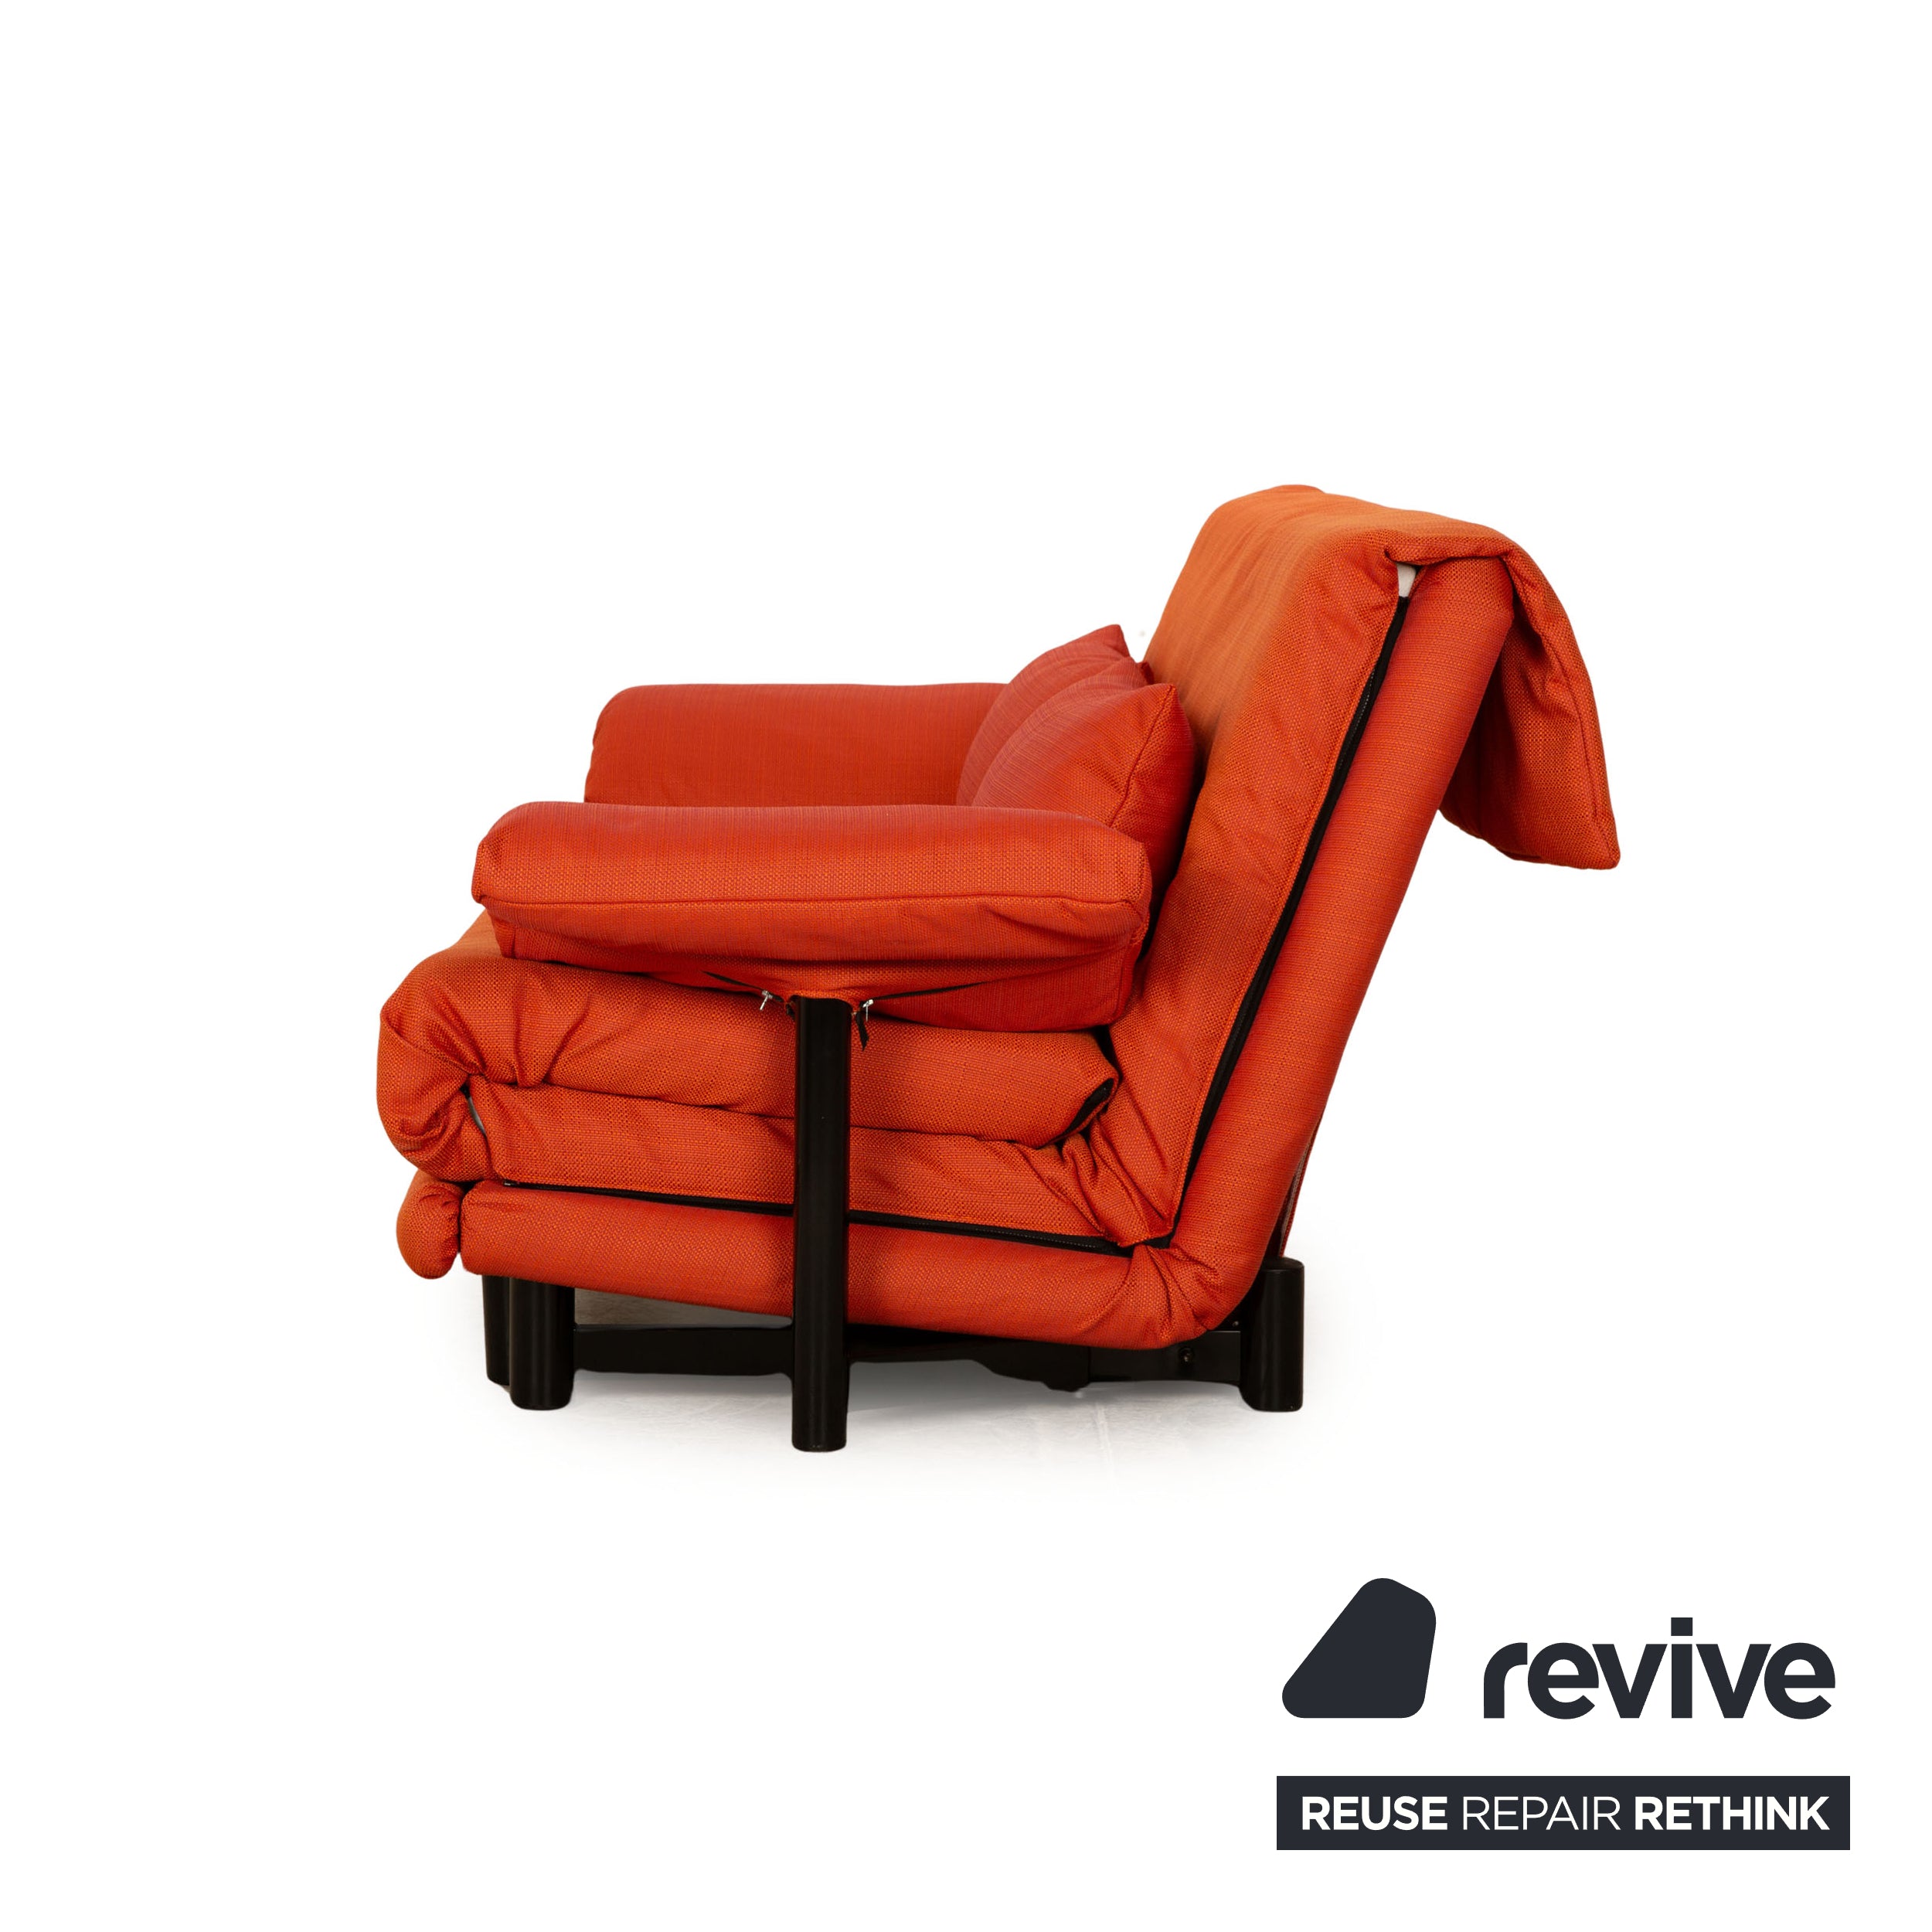 ligne roset Multy Stoff Dreisitzer Orange Sofa Couch mit Armlehnen Schlaffunktion Neubezug